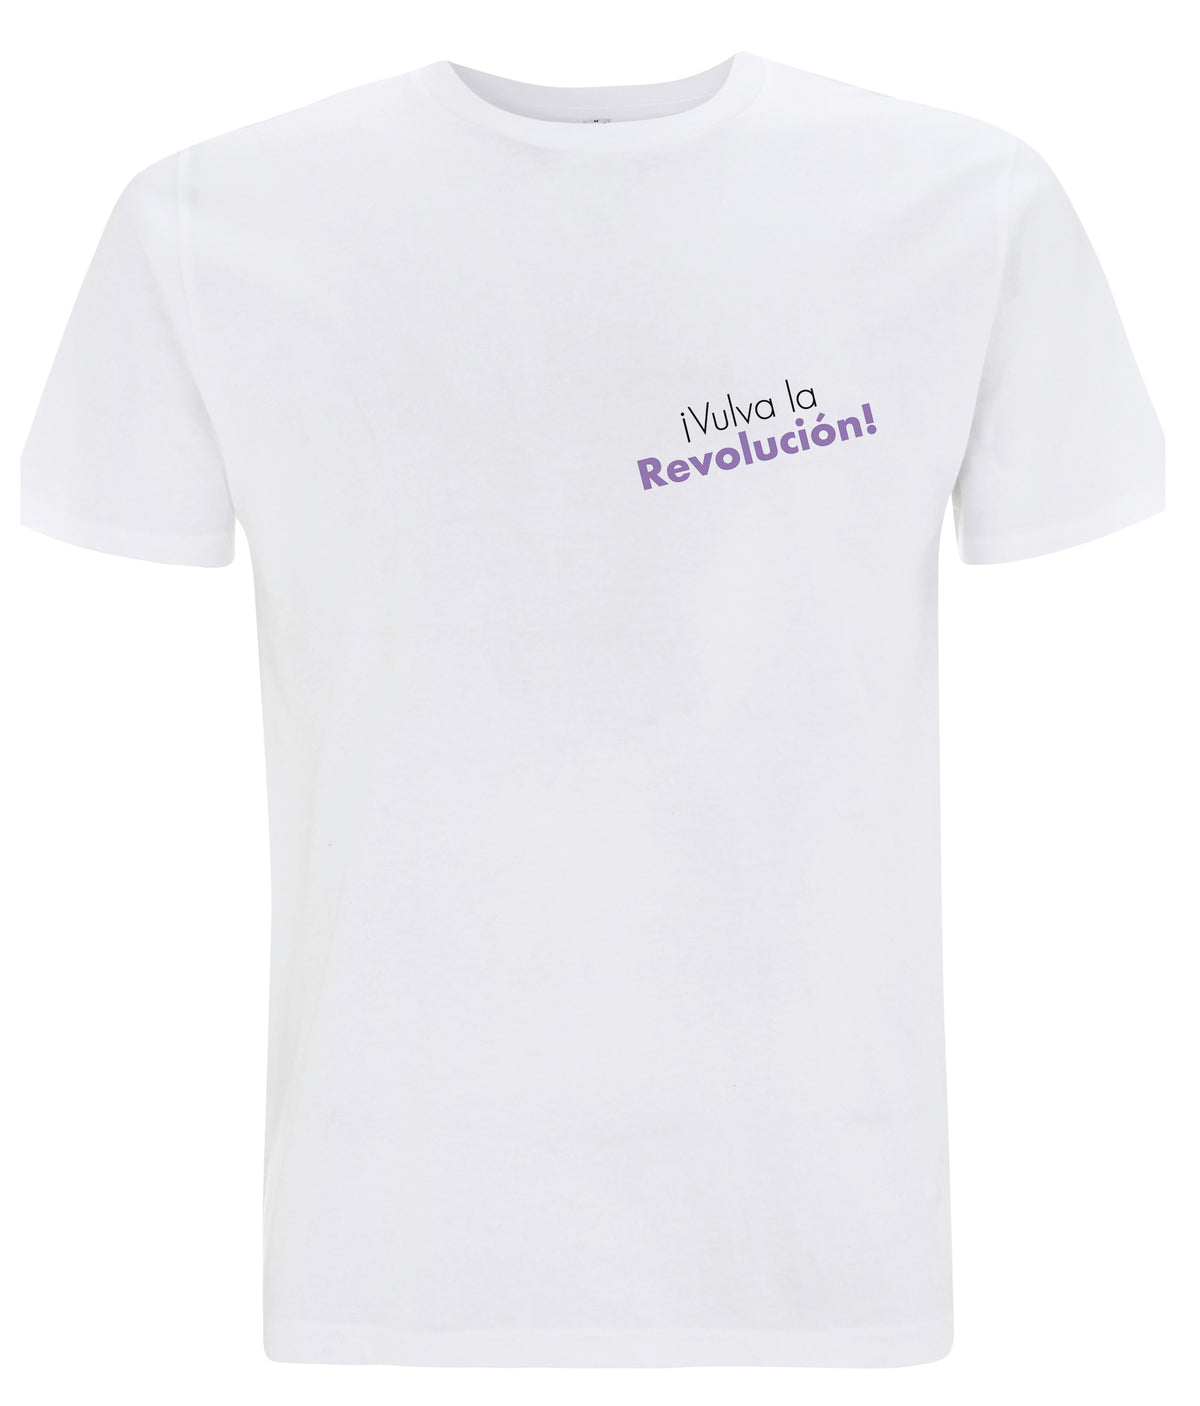 Vulva La Revolucion Organic Feminist T Shirt White